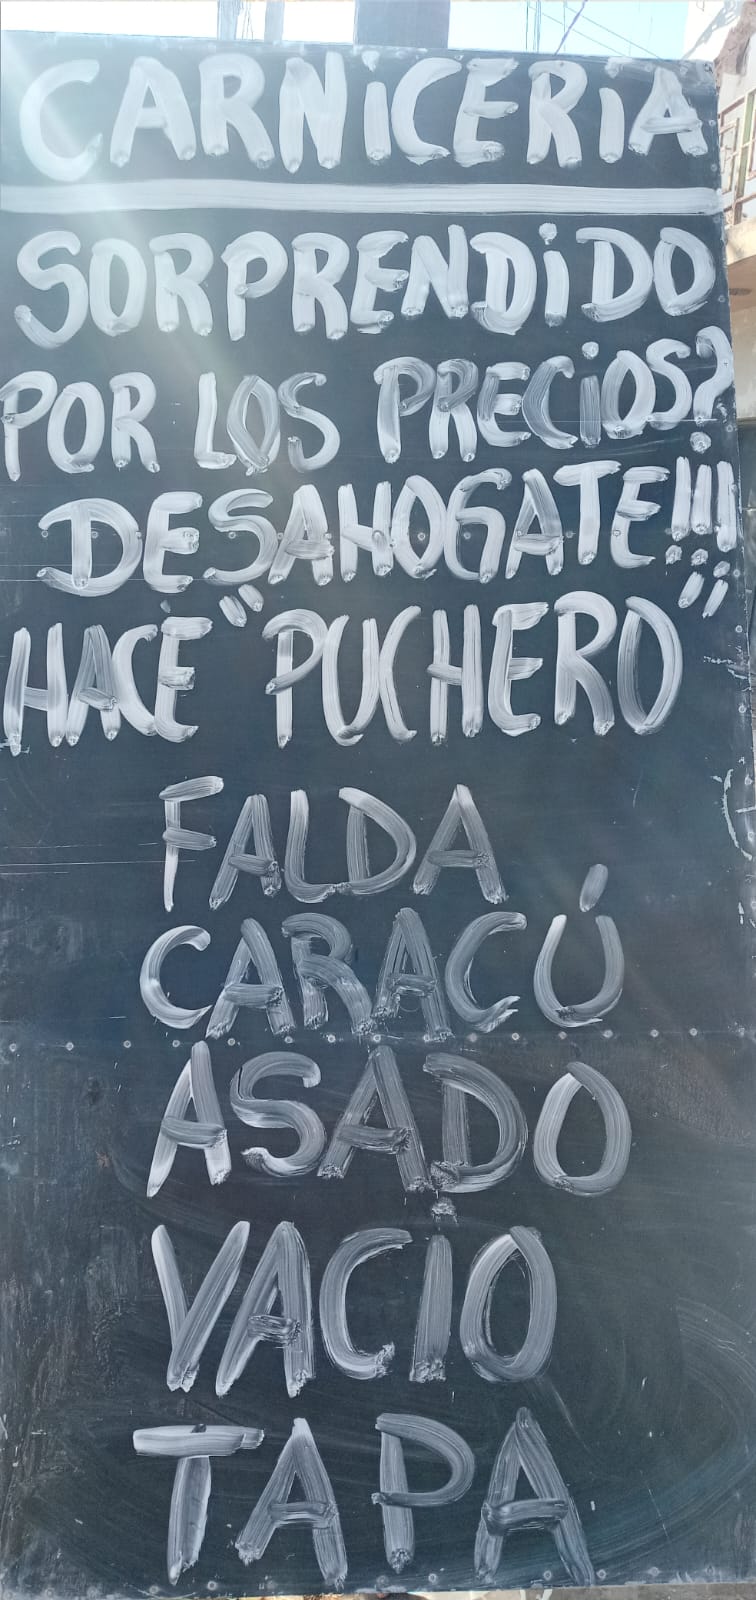 Carnicería La Plata